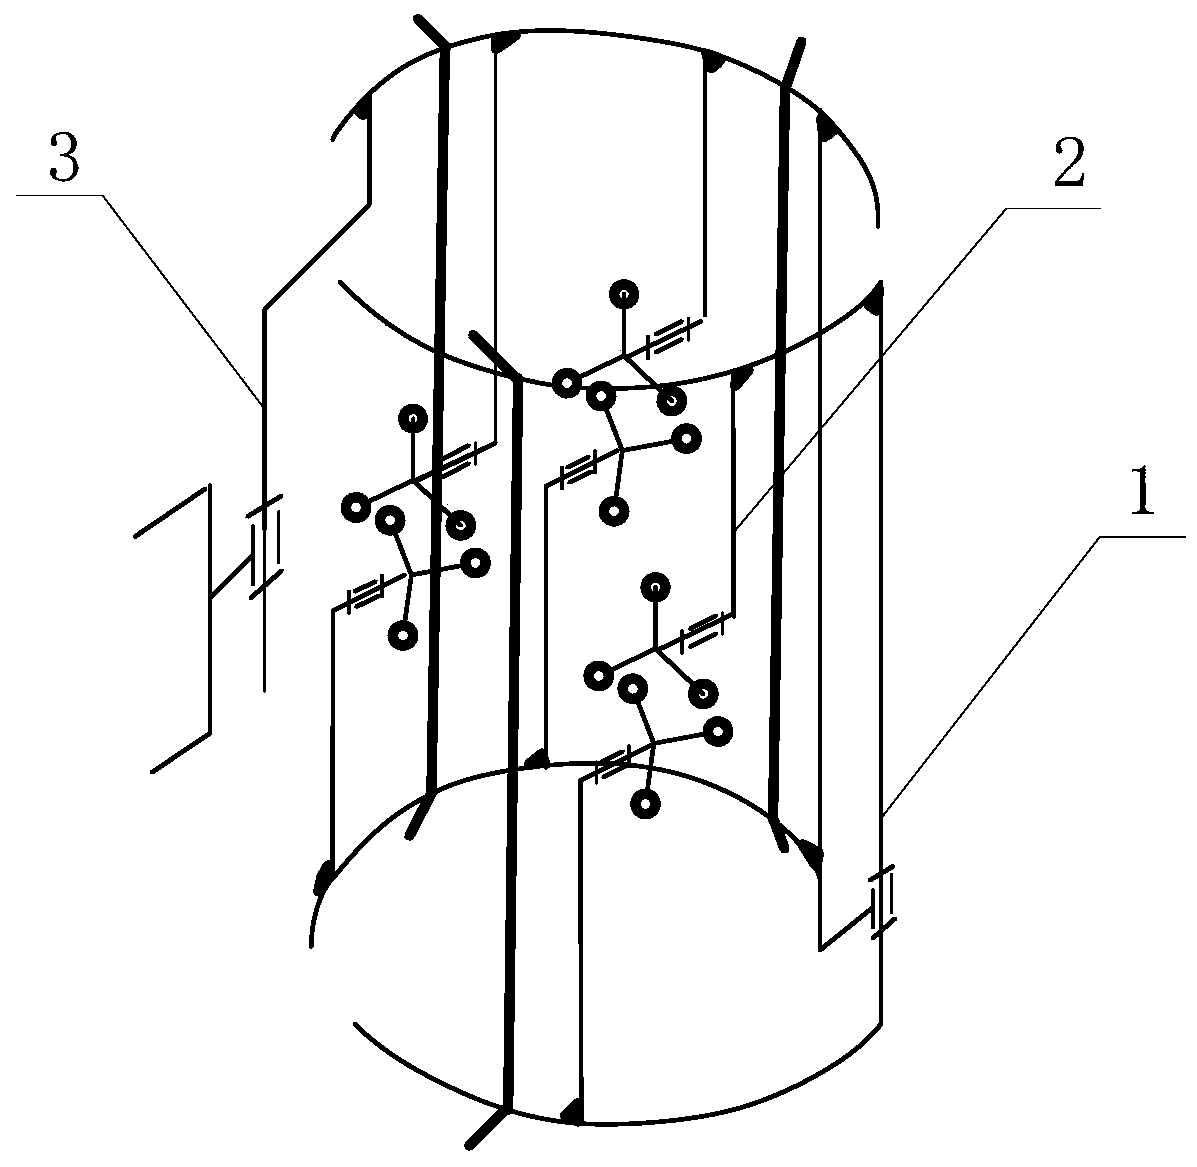 An insulator detection robot mechanism